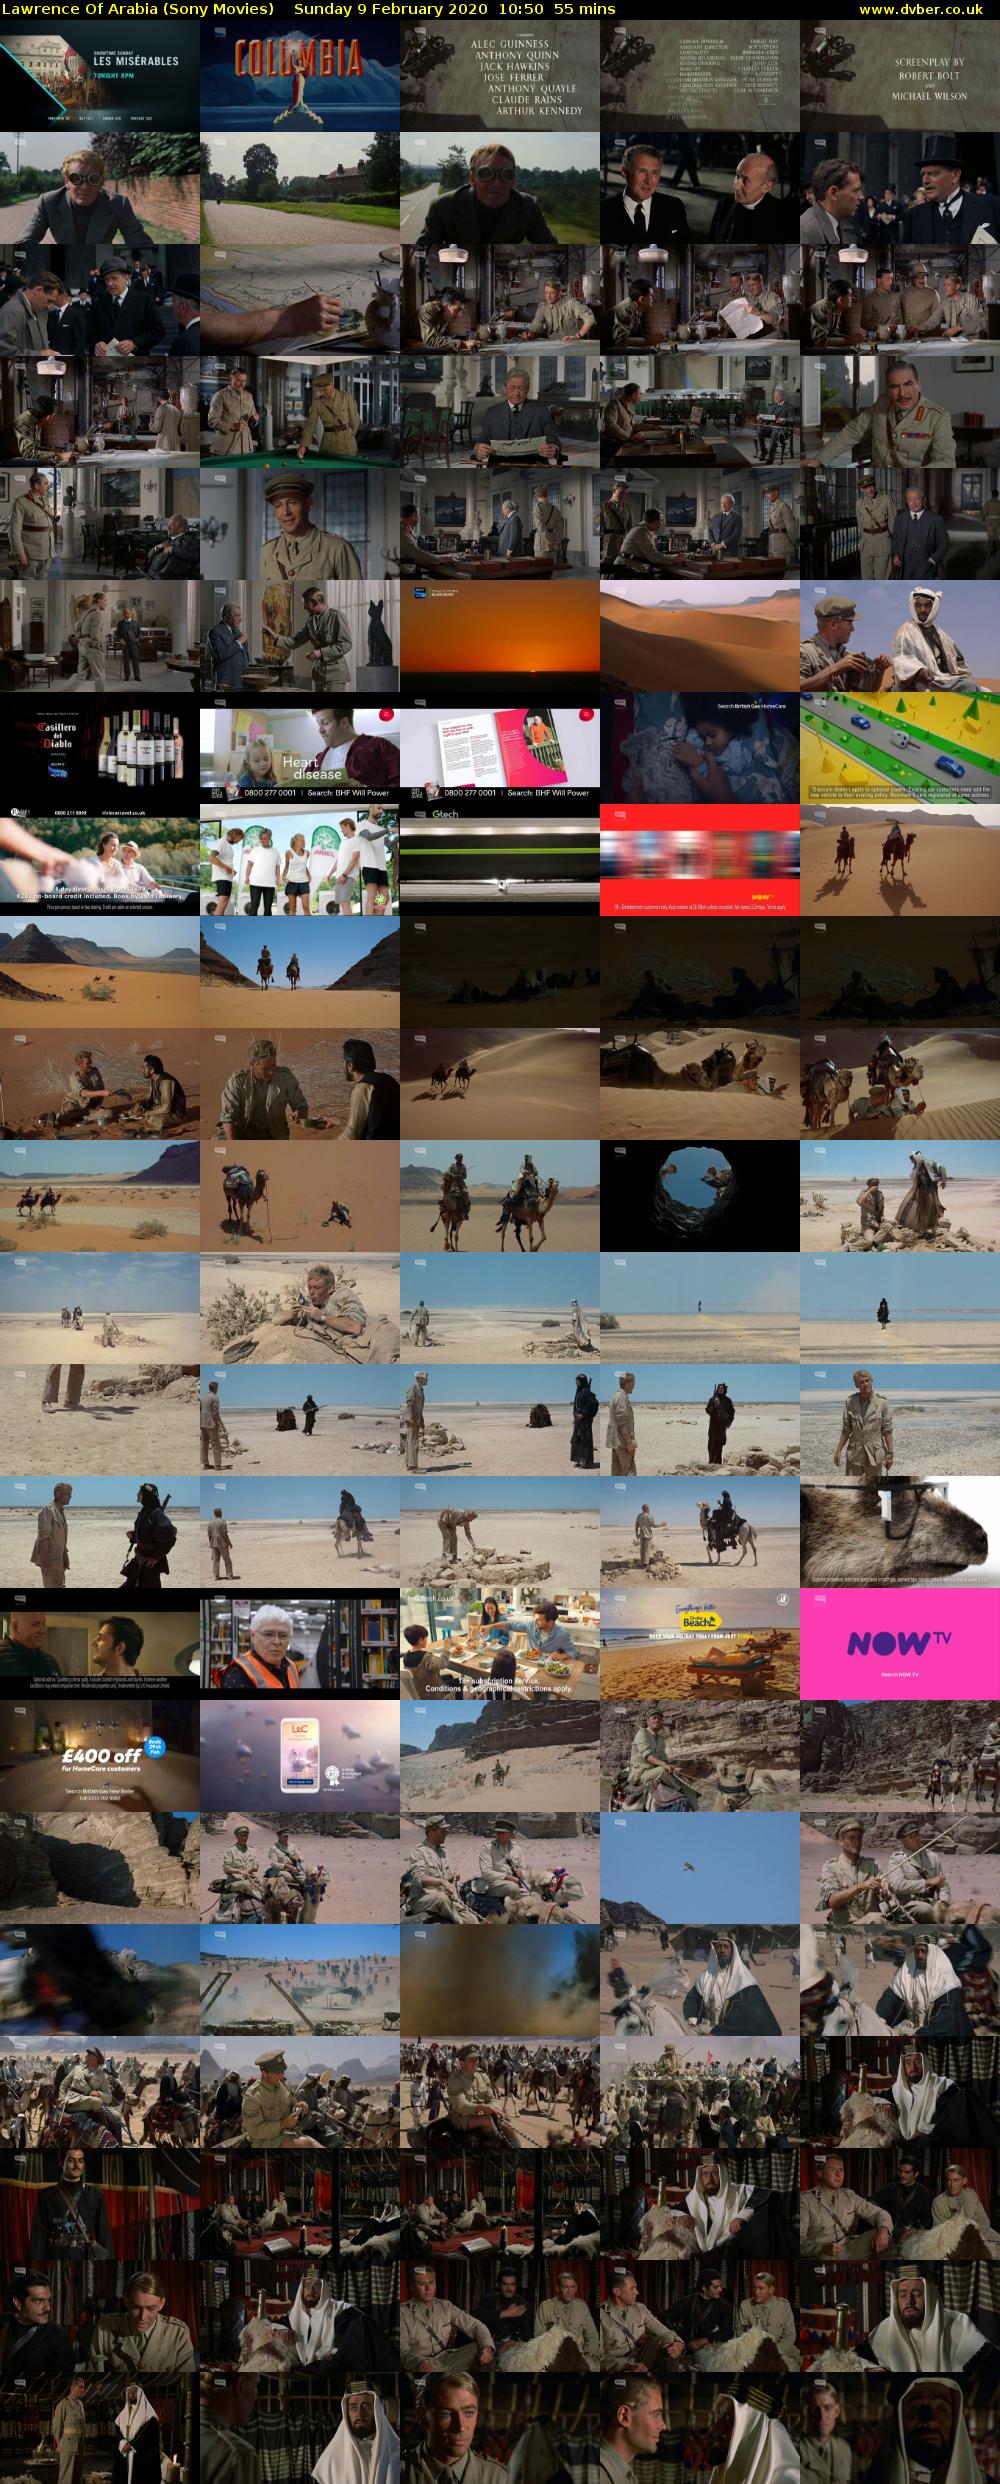 Lawrence Of Arabia (Sony Movies) Sunday 9 February 2020 10:50 - 11:45